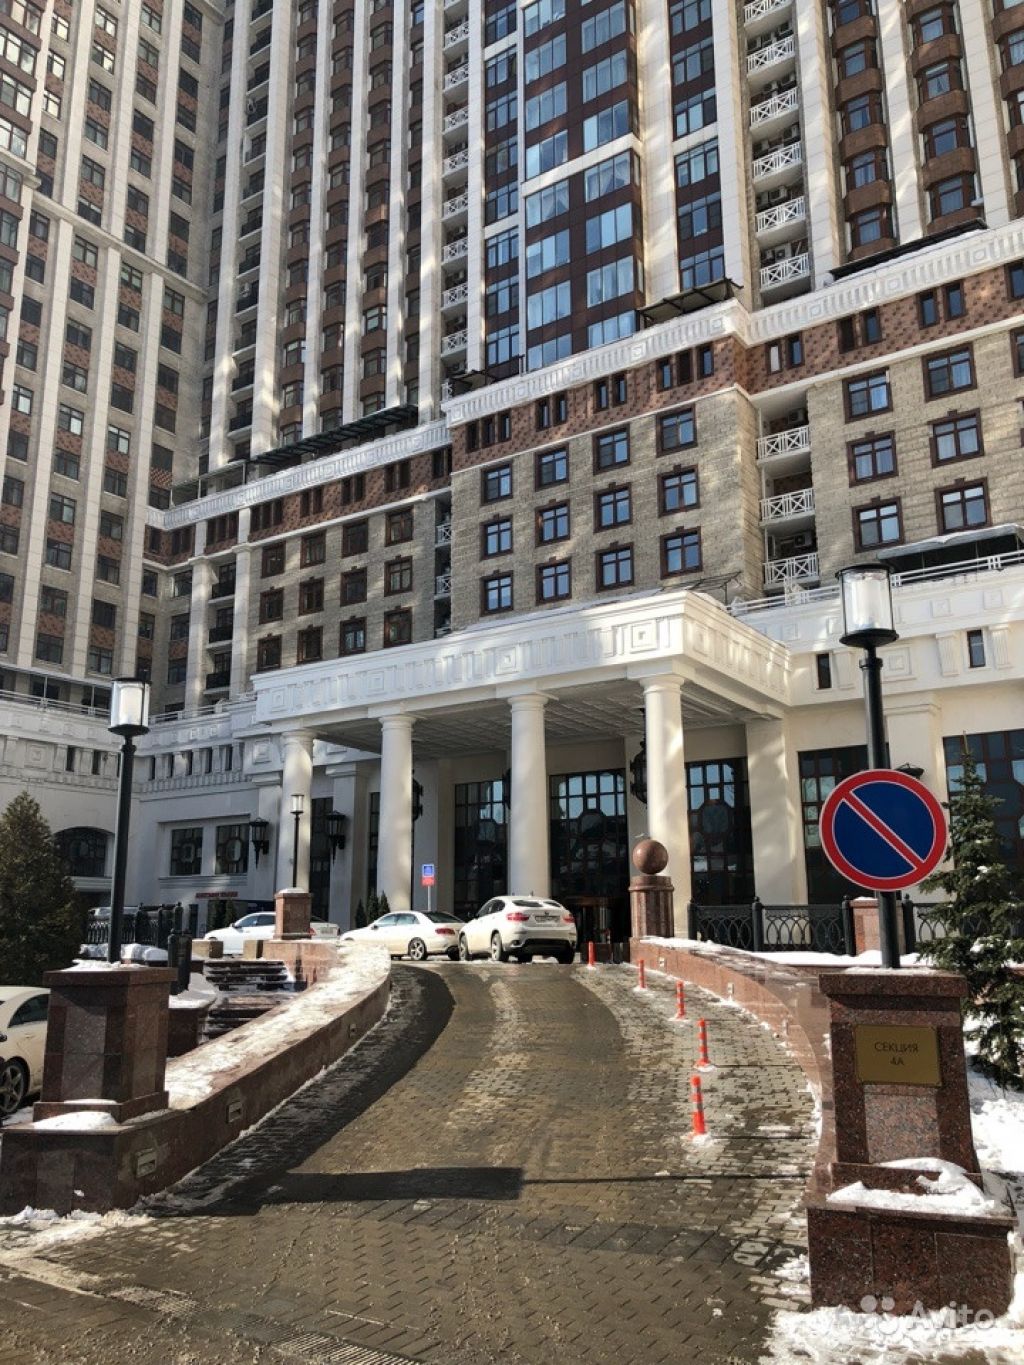 Продам квартиру 4-к квартира 202 м² на 33 этаже 57-этажного кирпичного дома в Москве. Фото 1